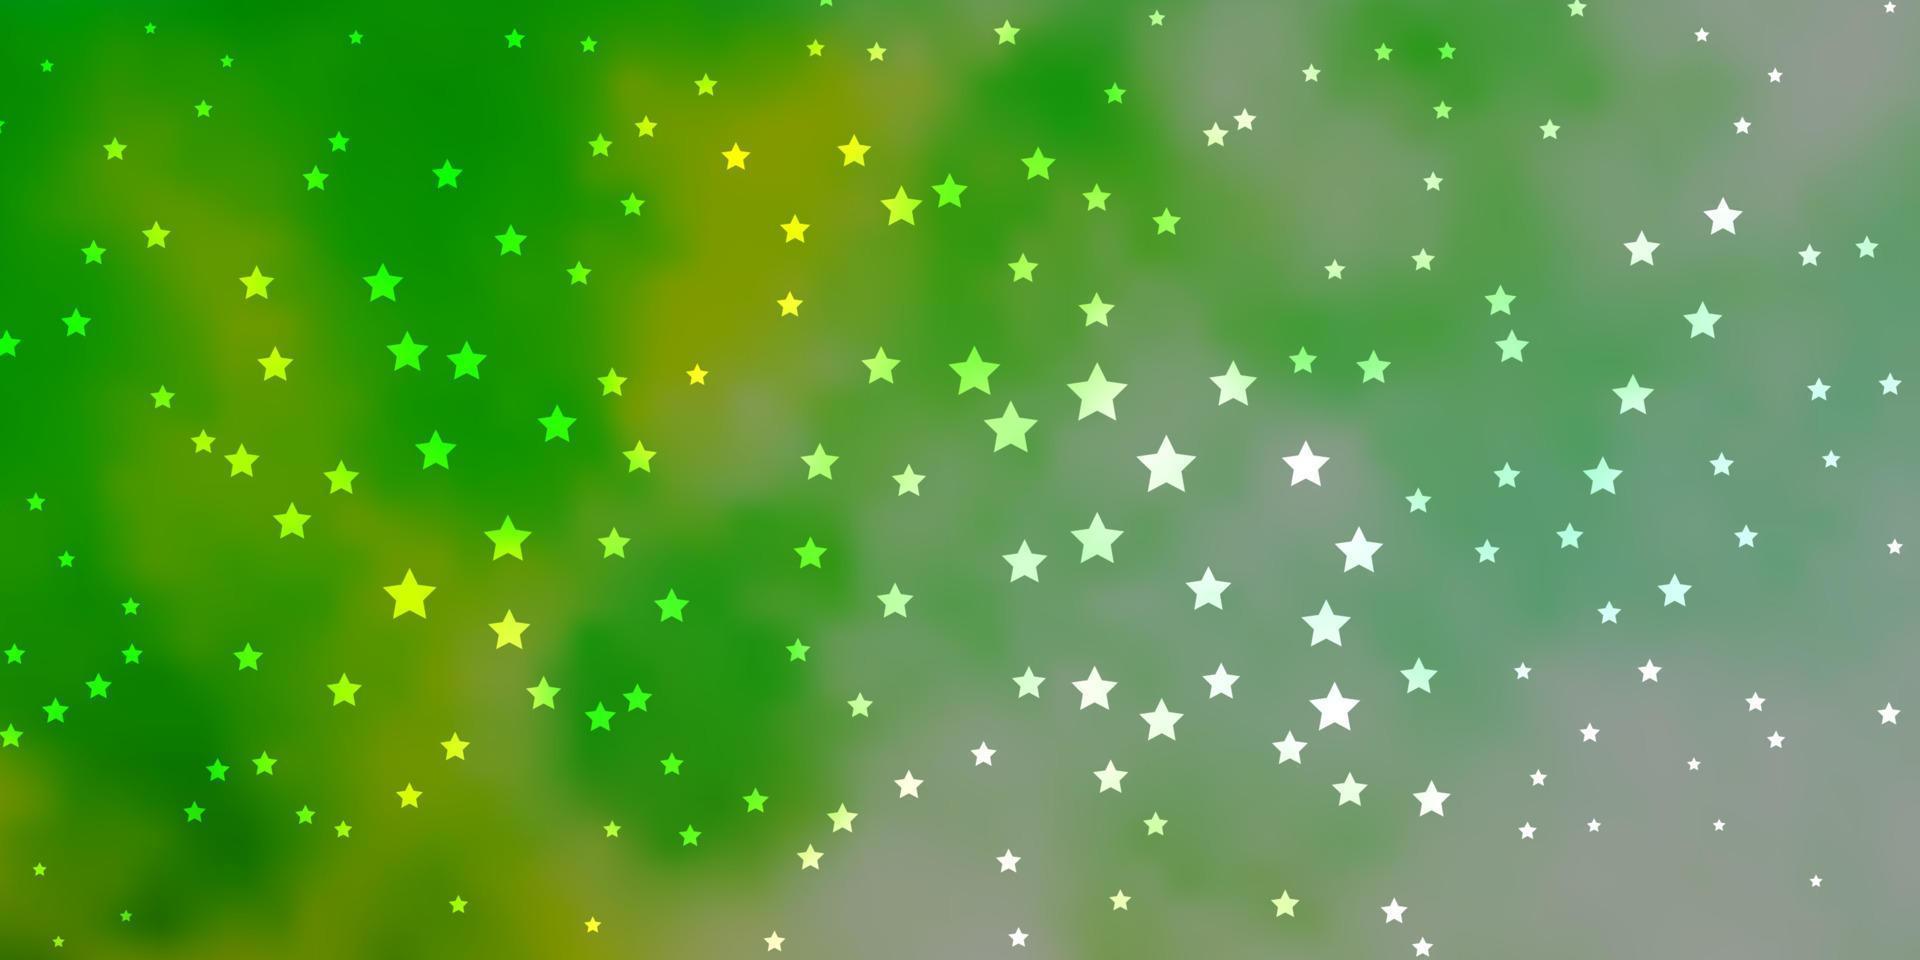 layout de vetor azul escuro e verde com estrelas brilhantes.